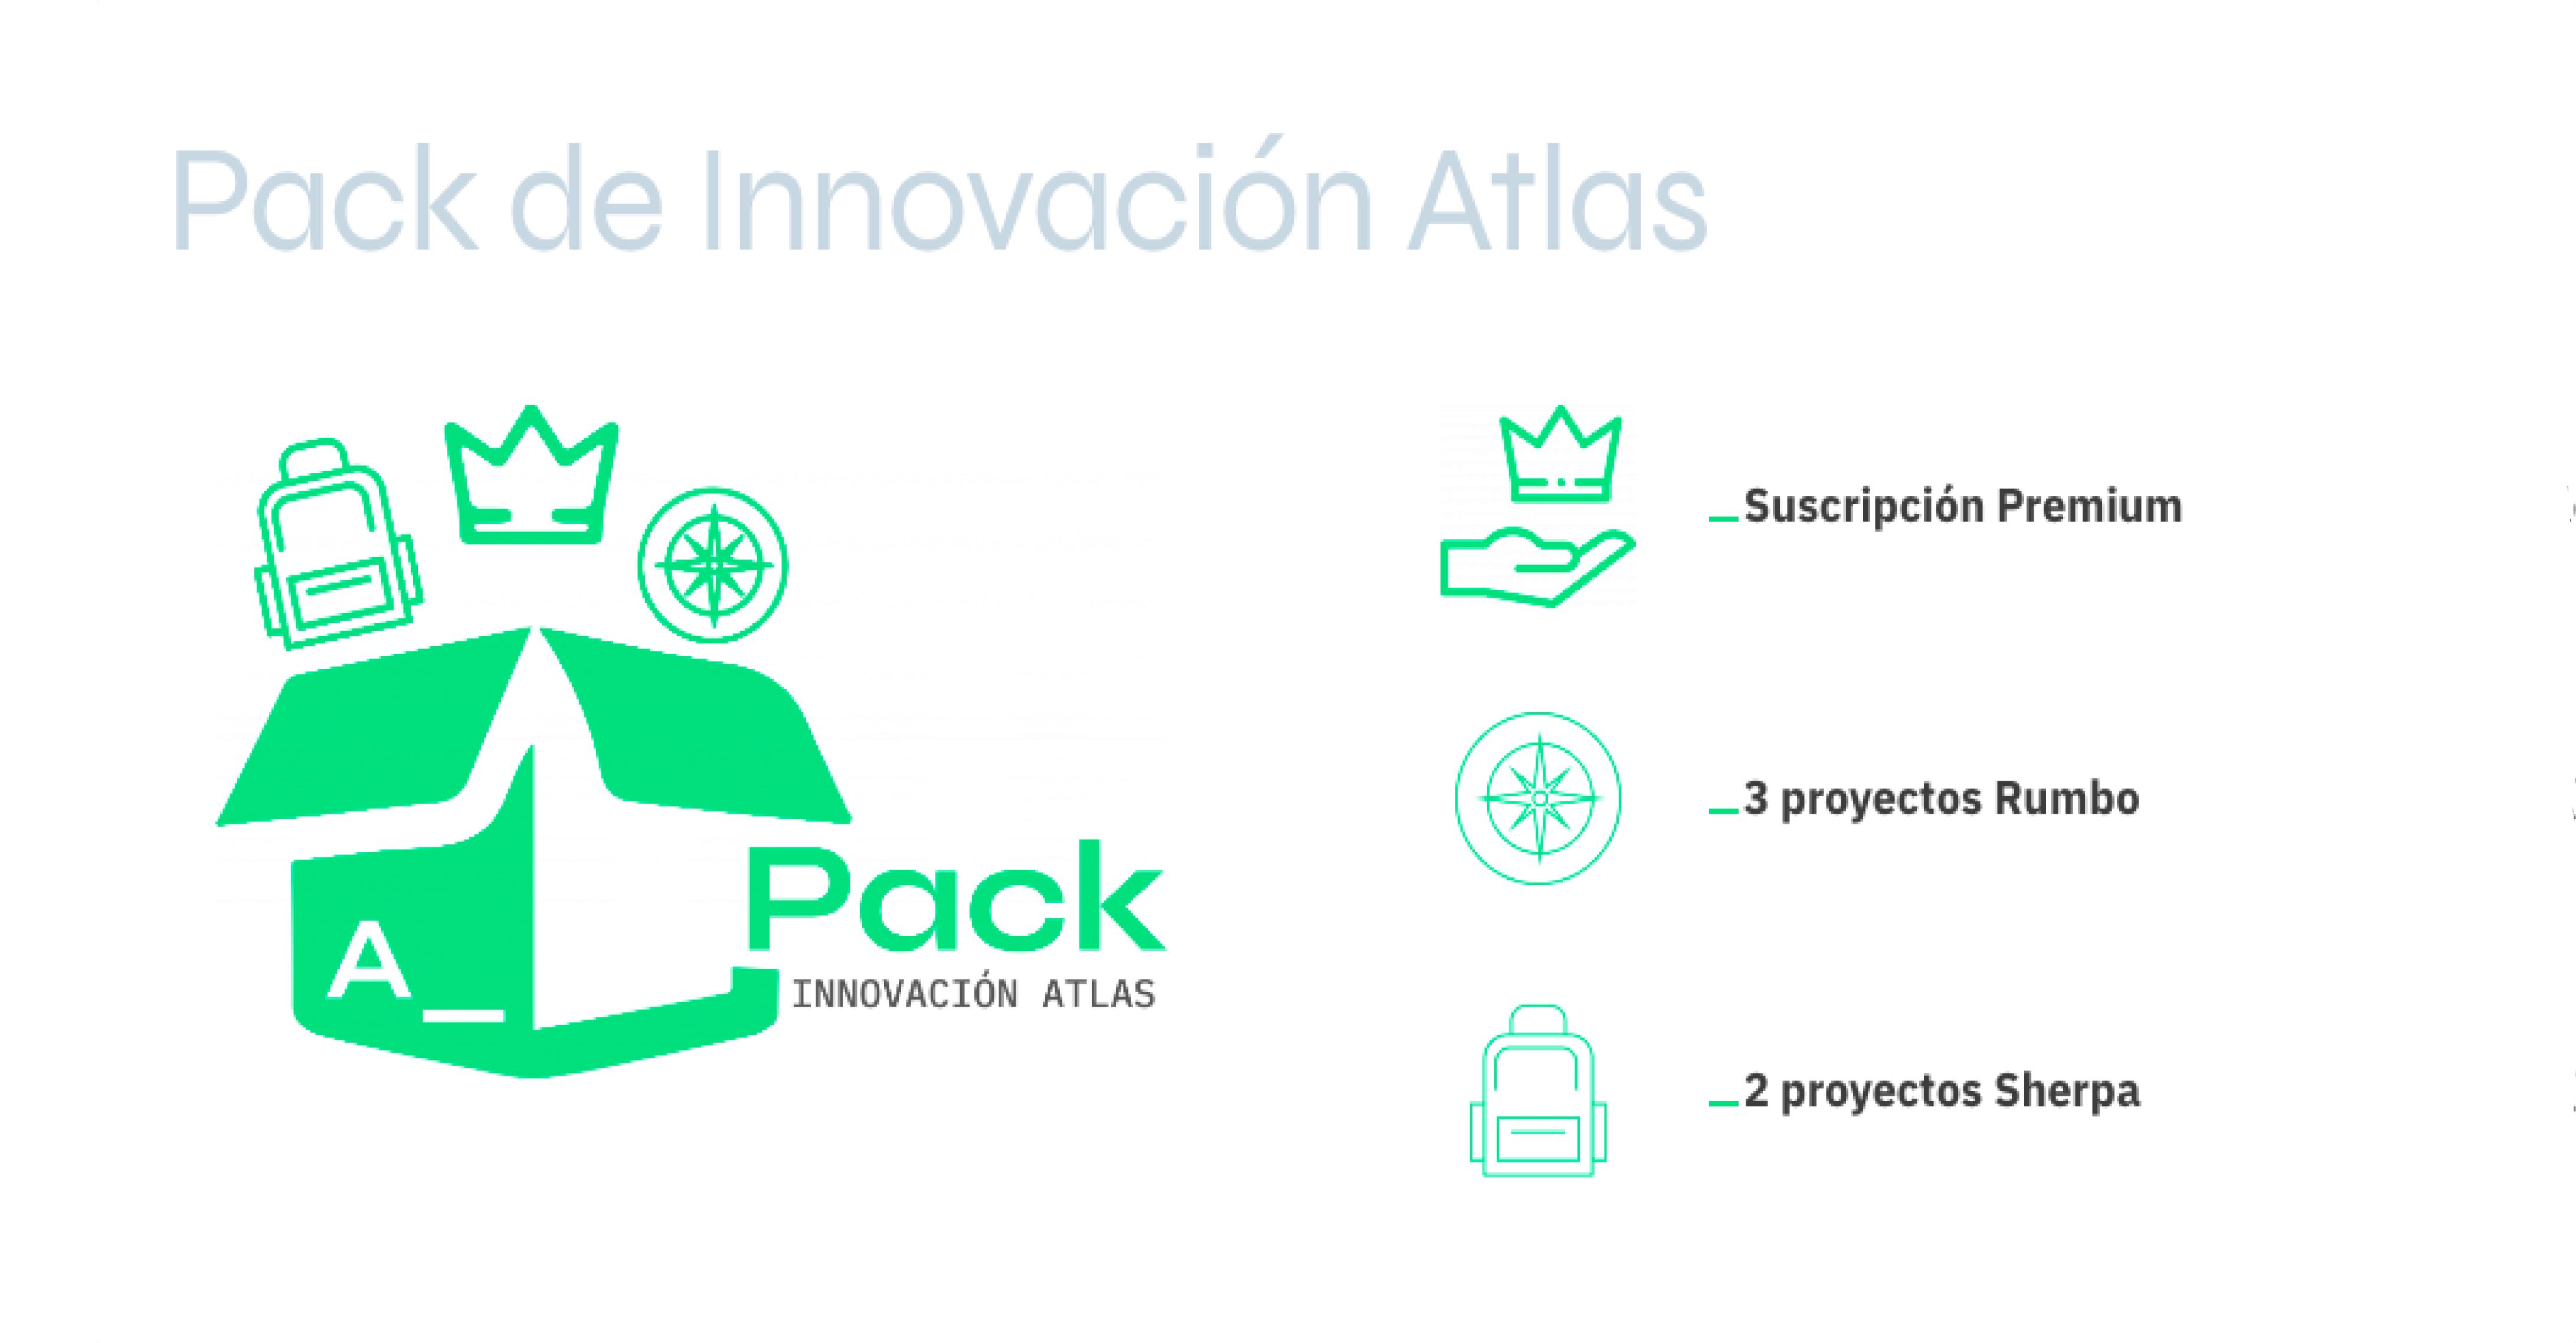 Pack Innovación con un descuento increíble sólo en verano: ve de vacaciones asegurando con Atlas tu transformación digital